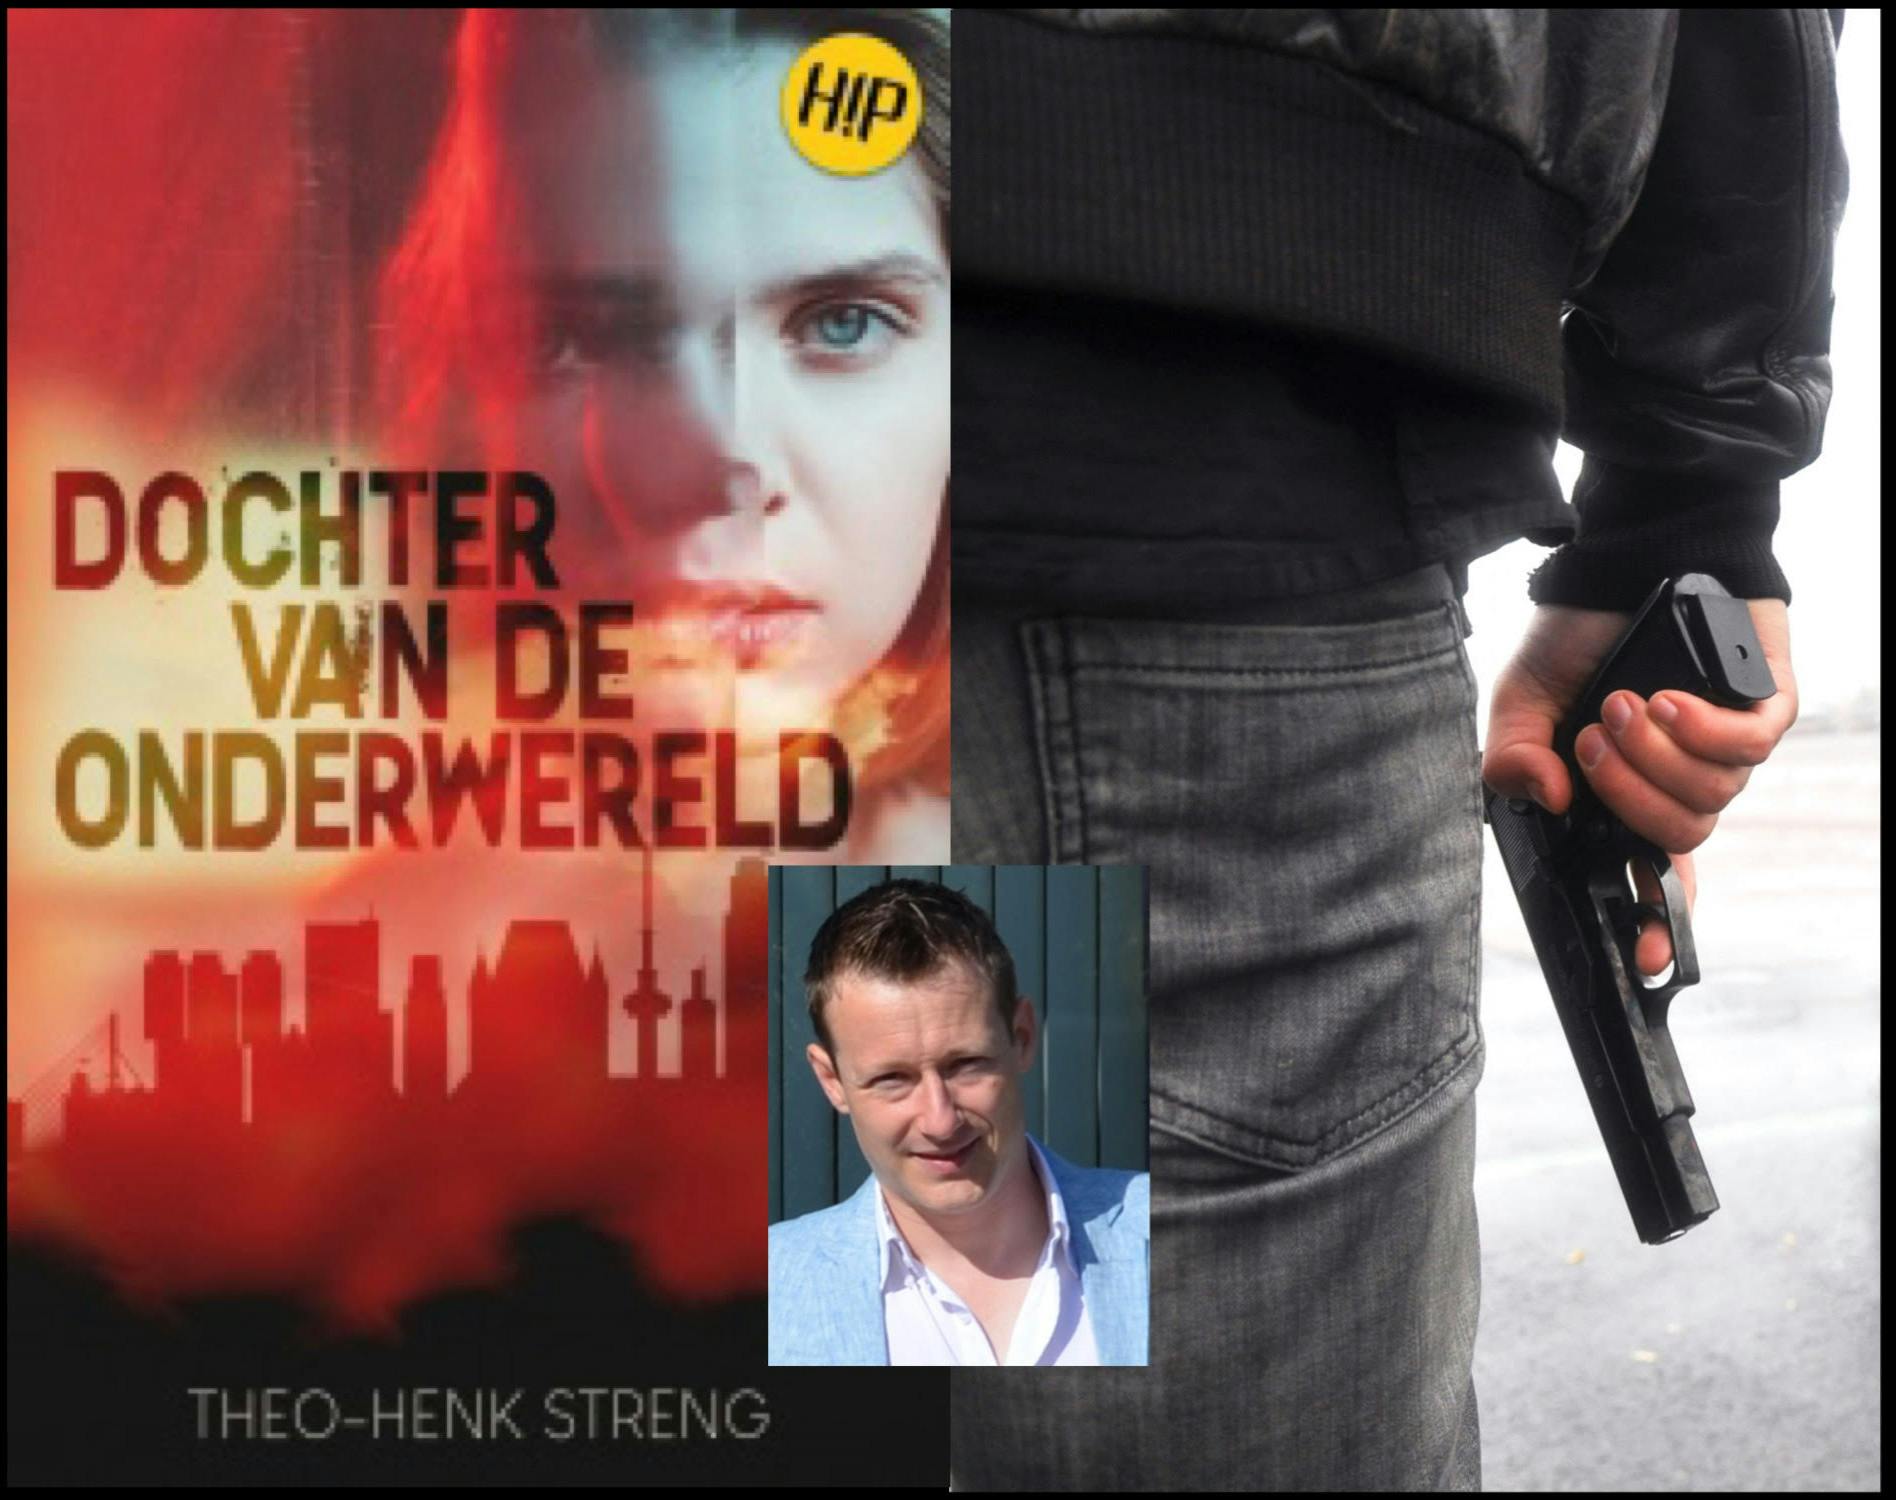 Theo-Henk Streng schreef Dochter van de onderwereld.jpg